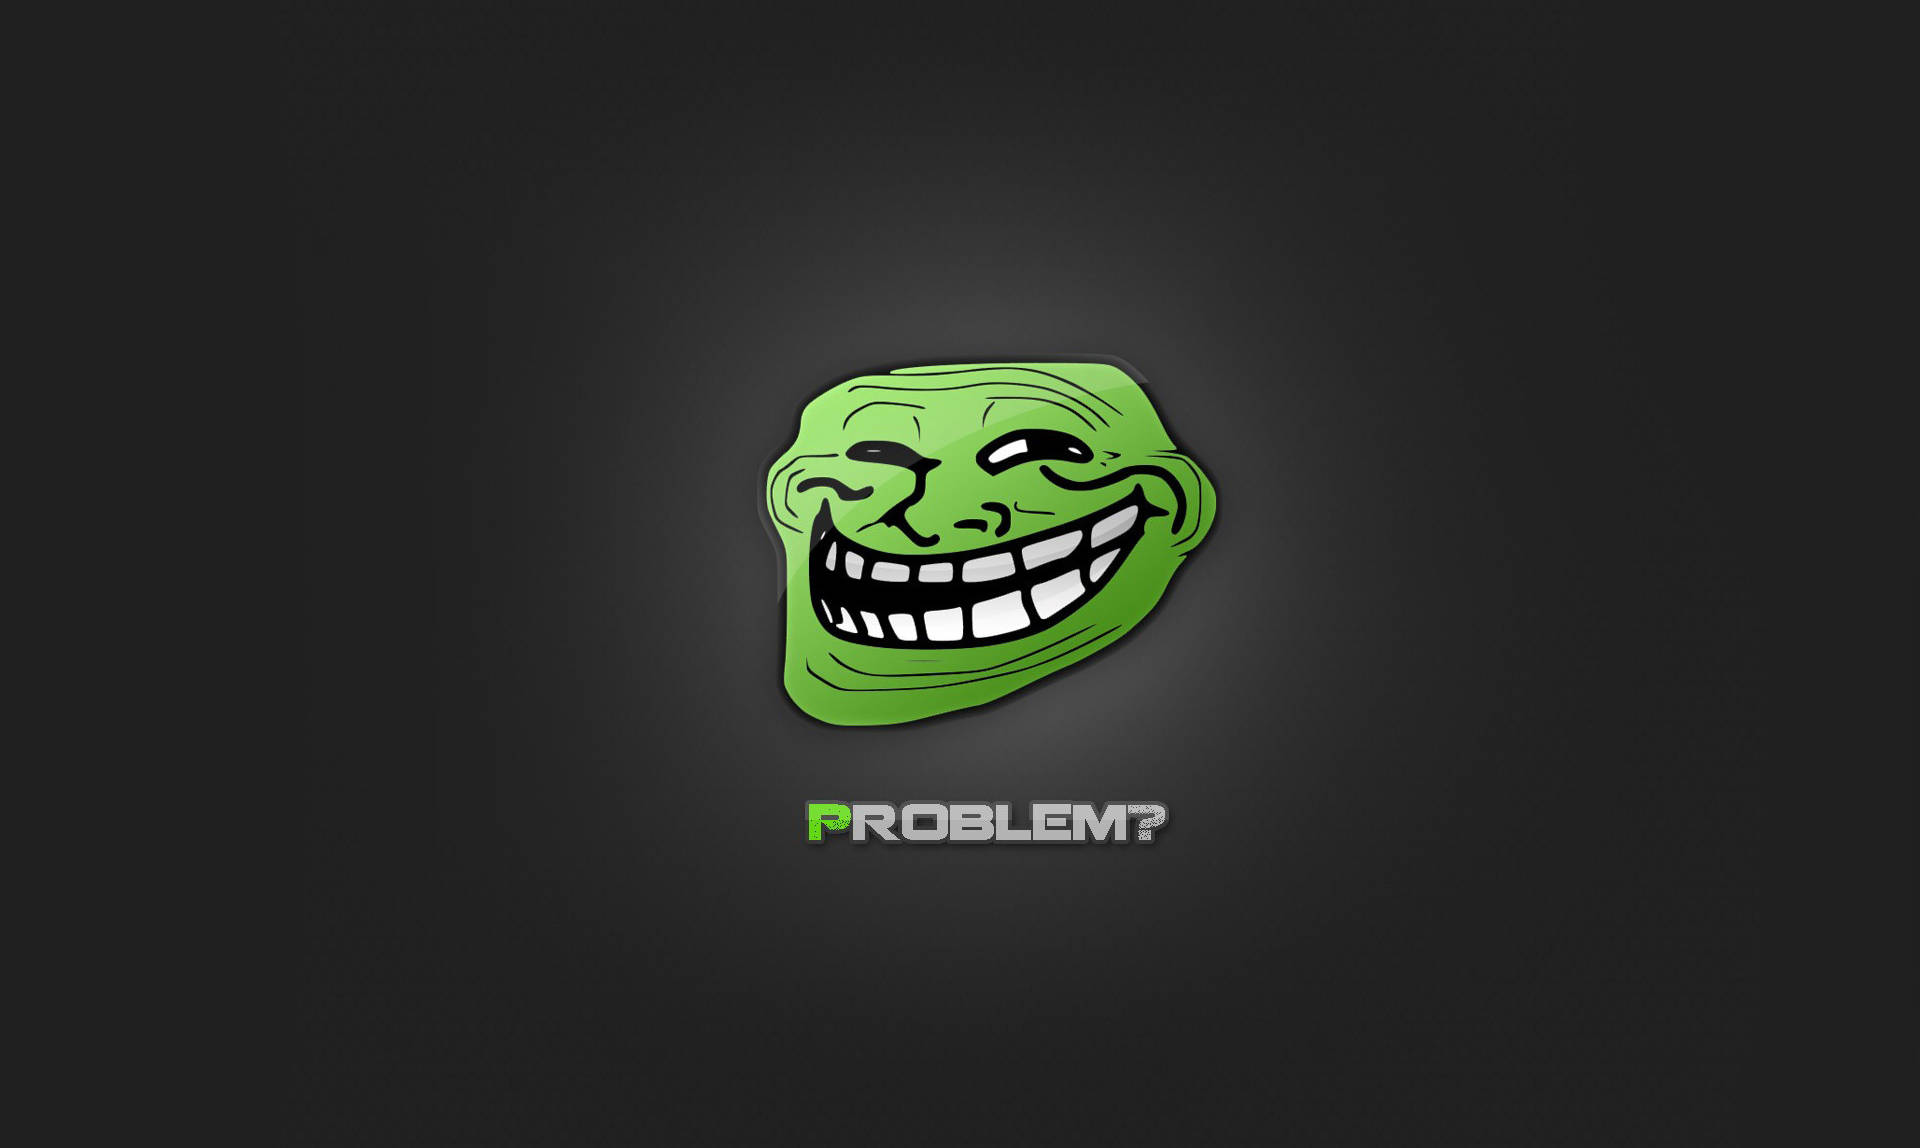 Green Trollface Rage Meme Wallpaper